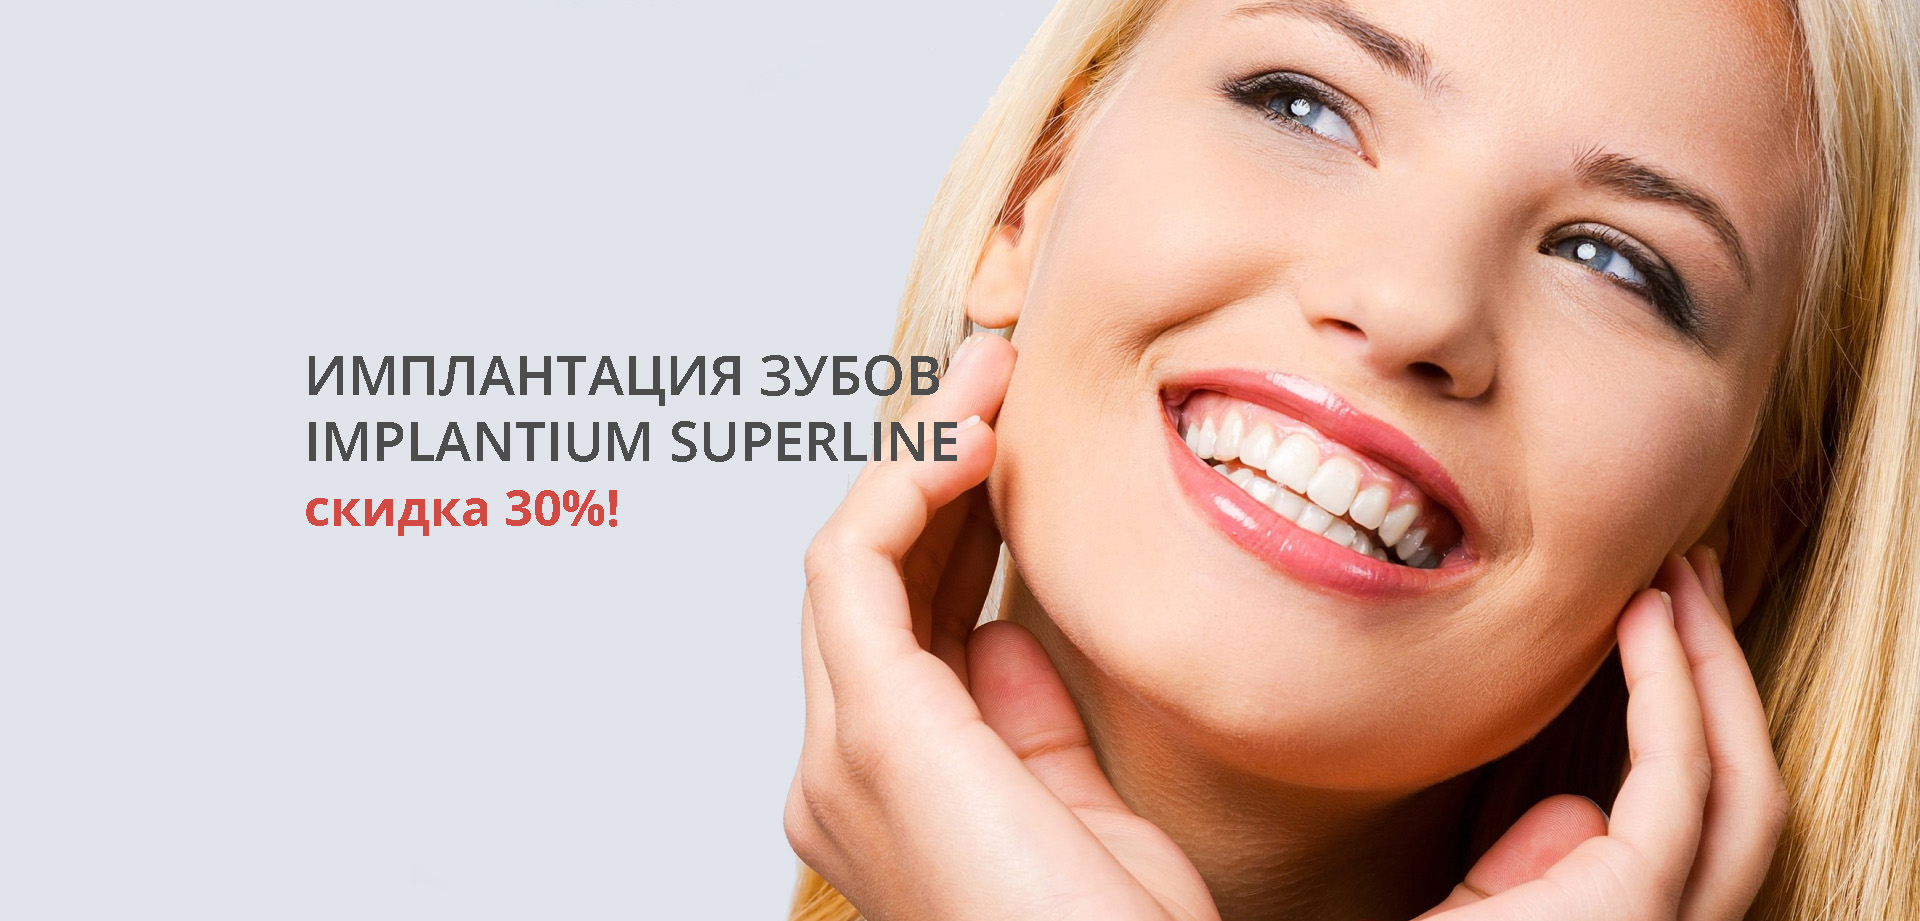 Имплантация зубов Implantium SuperLine со скидкой 30%!